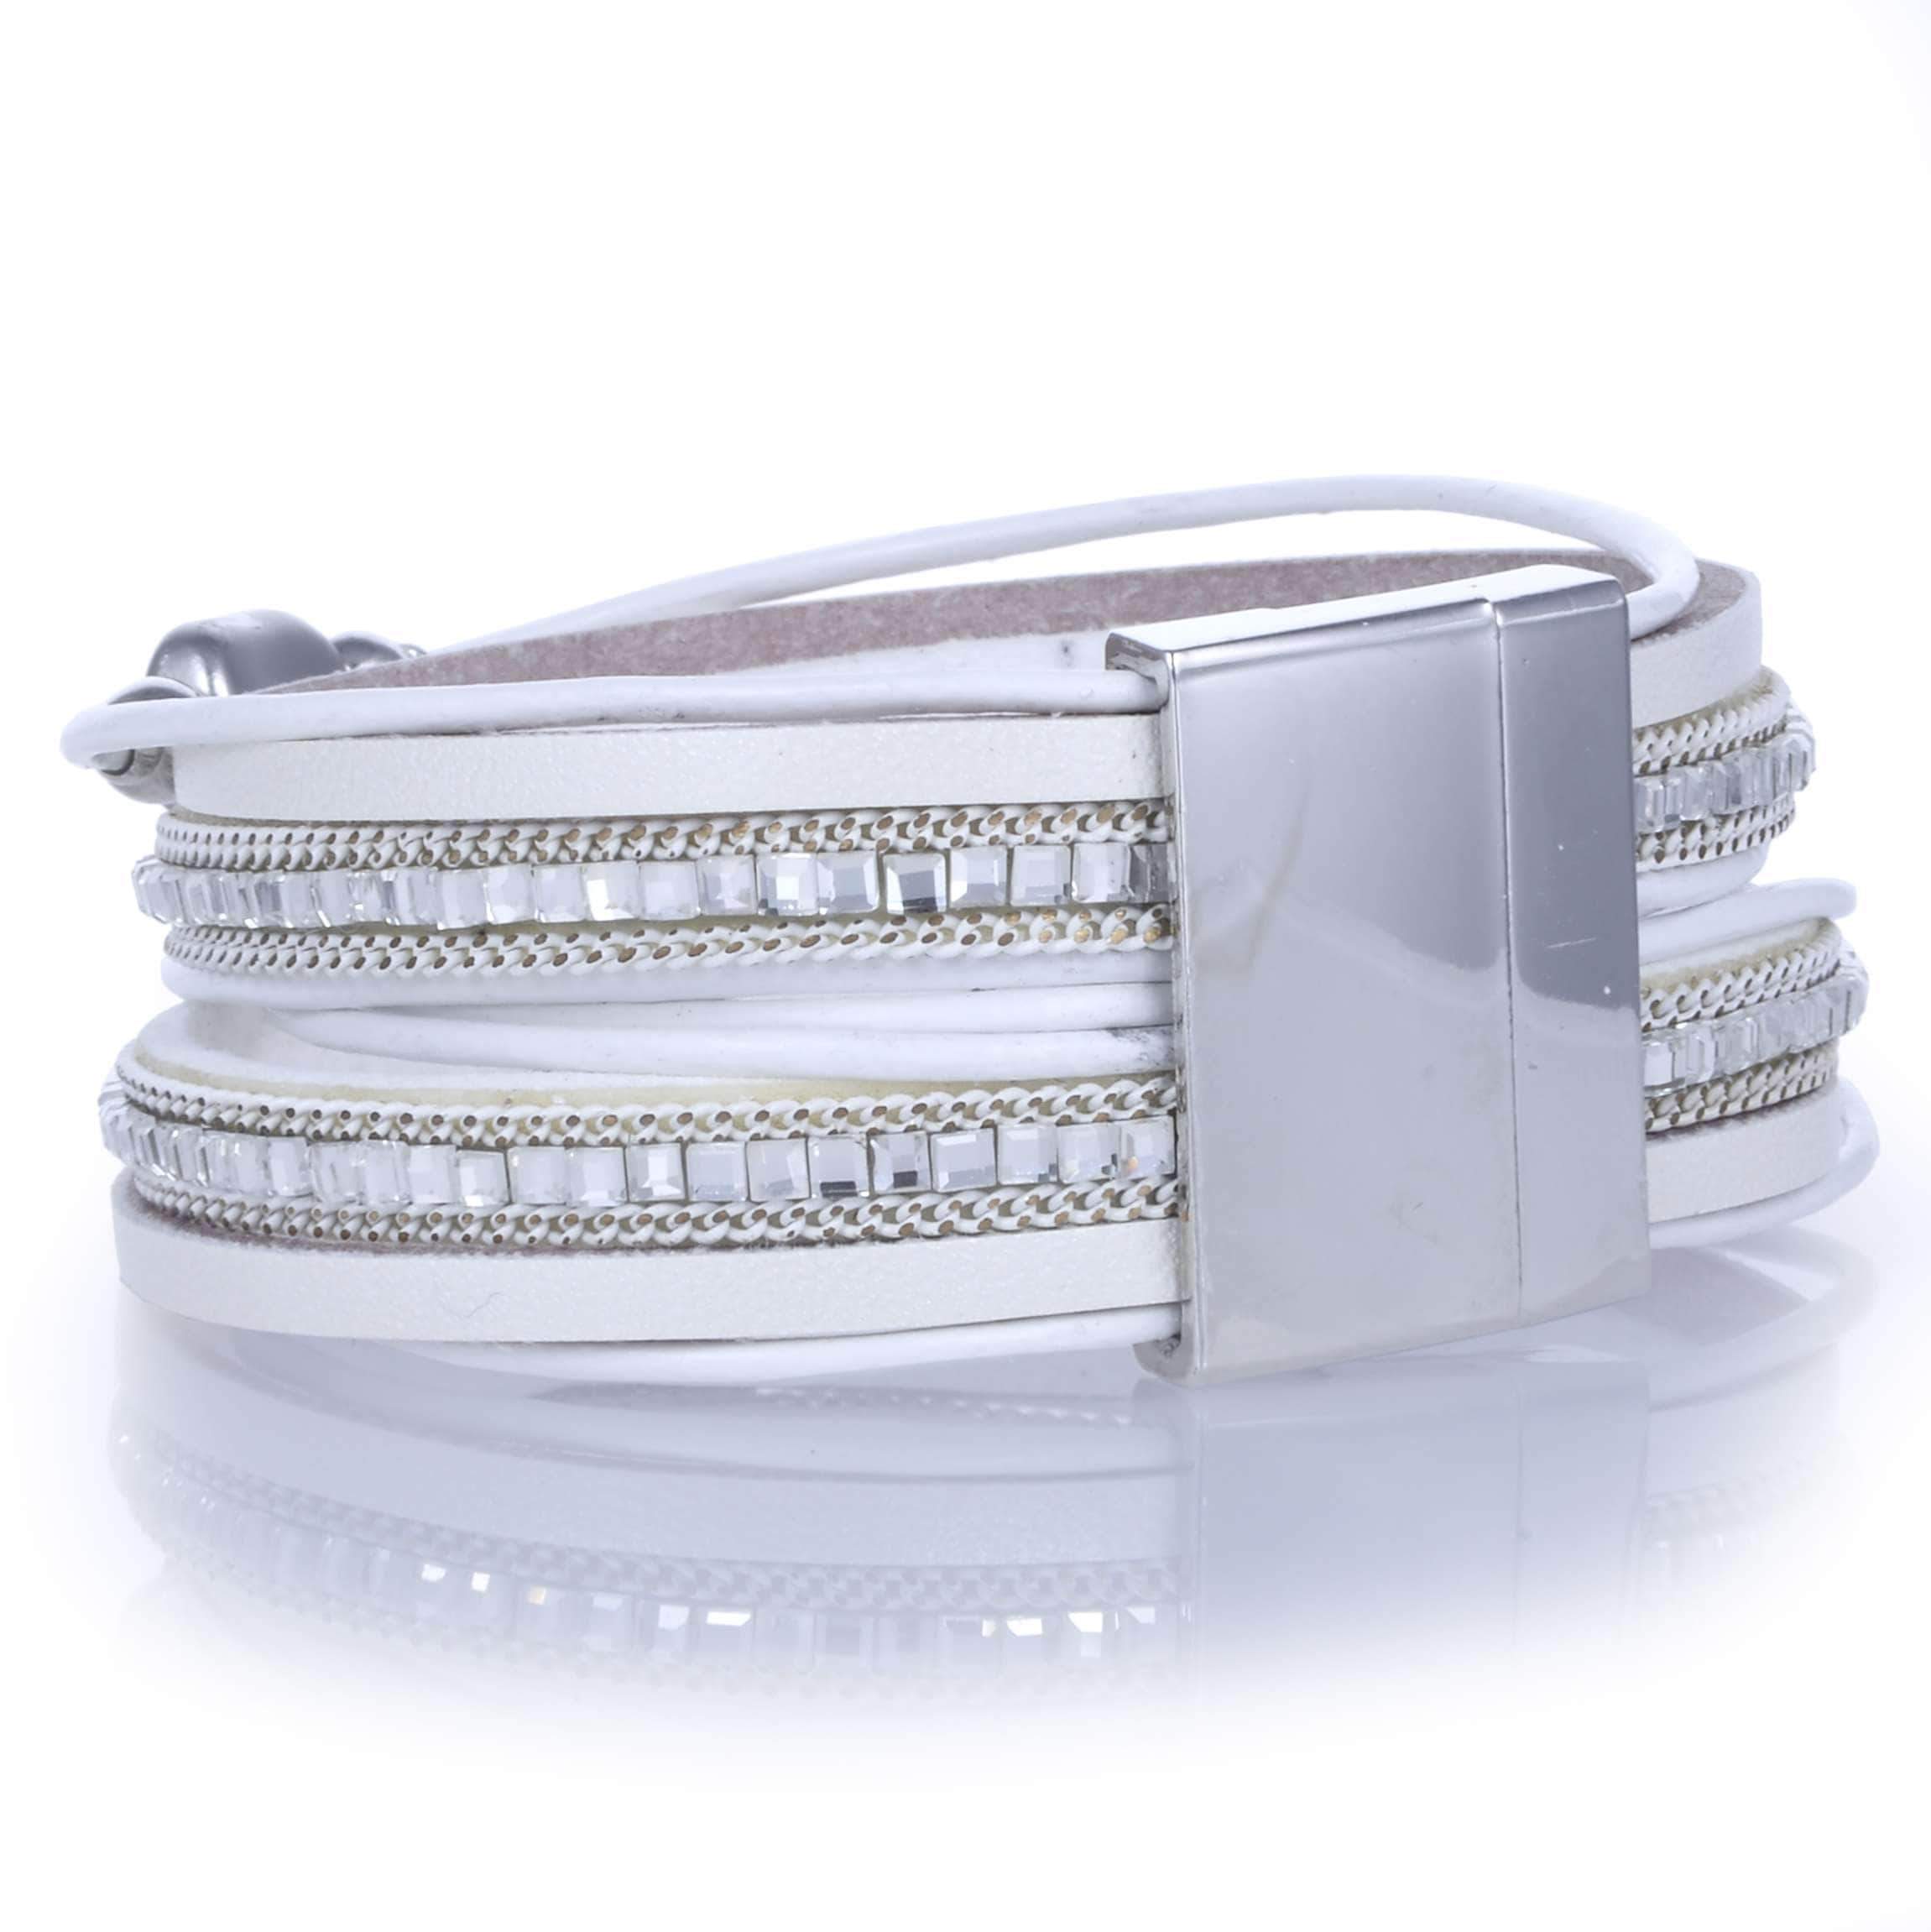 Multiple Strand Pebble Beads Bracelet in White back view